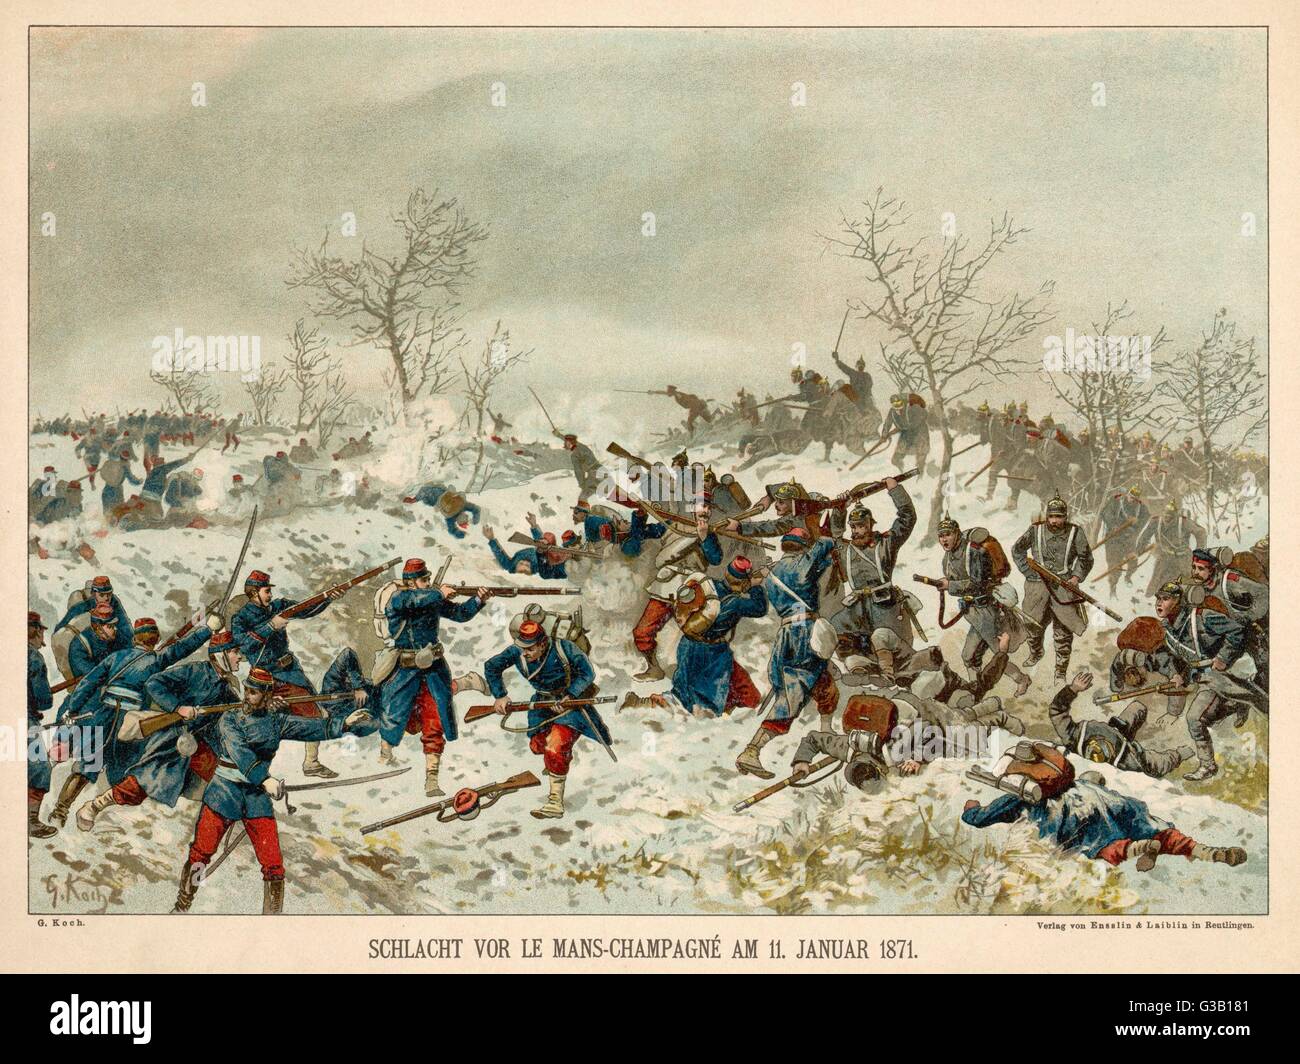 La battaglia di Le Mans-Champagne su una coperta di neve pianura durante la guerra franco-prussiana Data: 11 gennaio 1871 Foto Stock